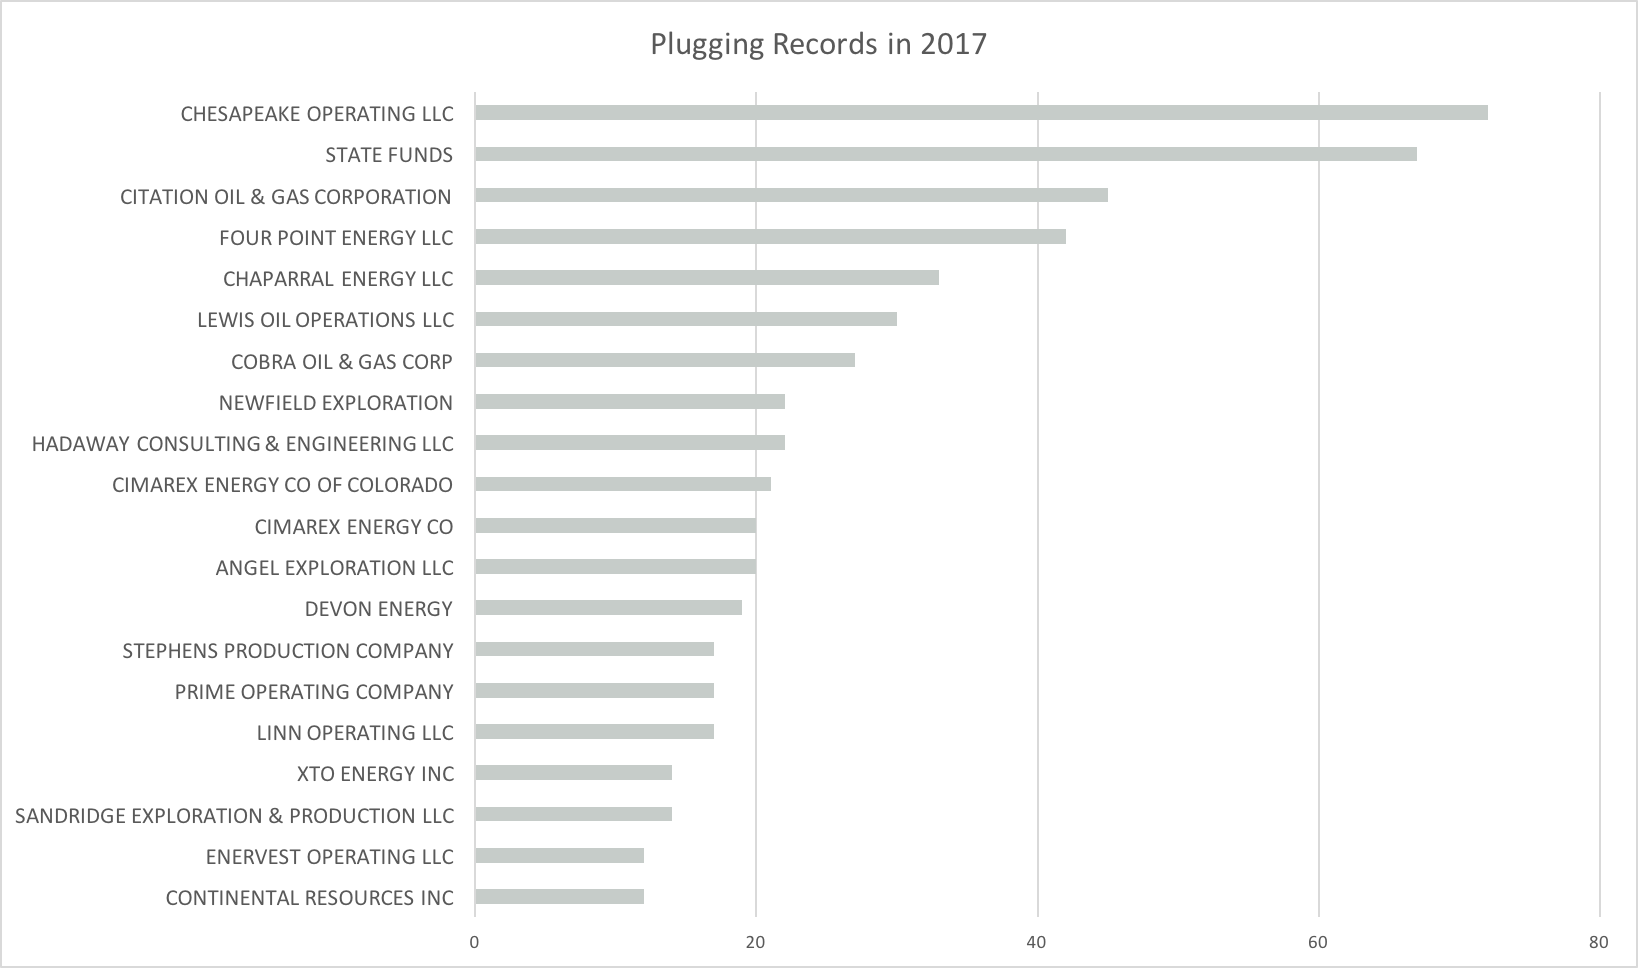 Plugging 2017